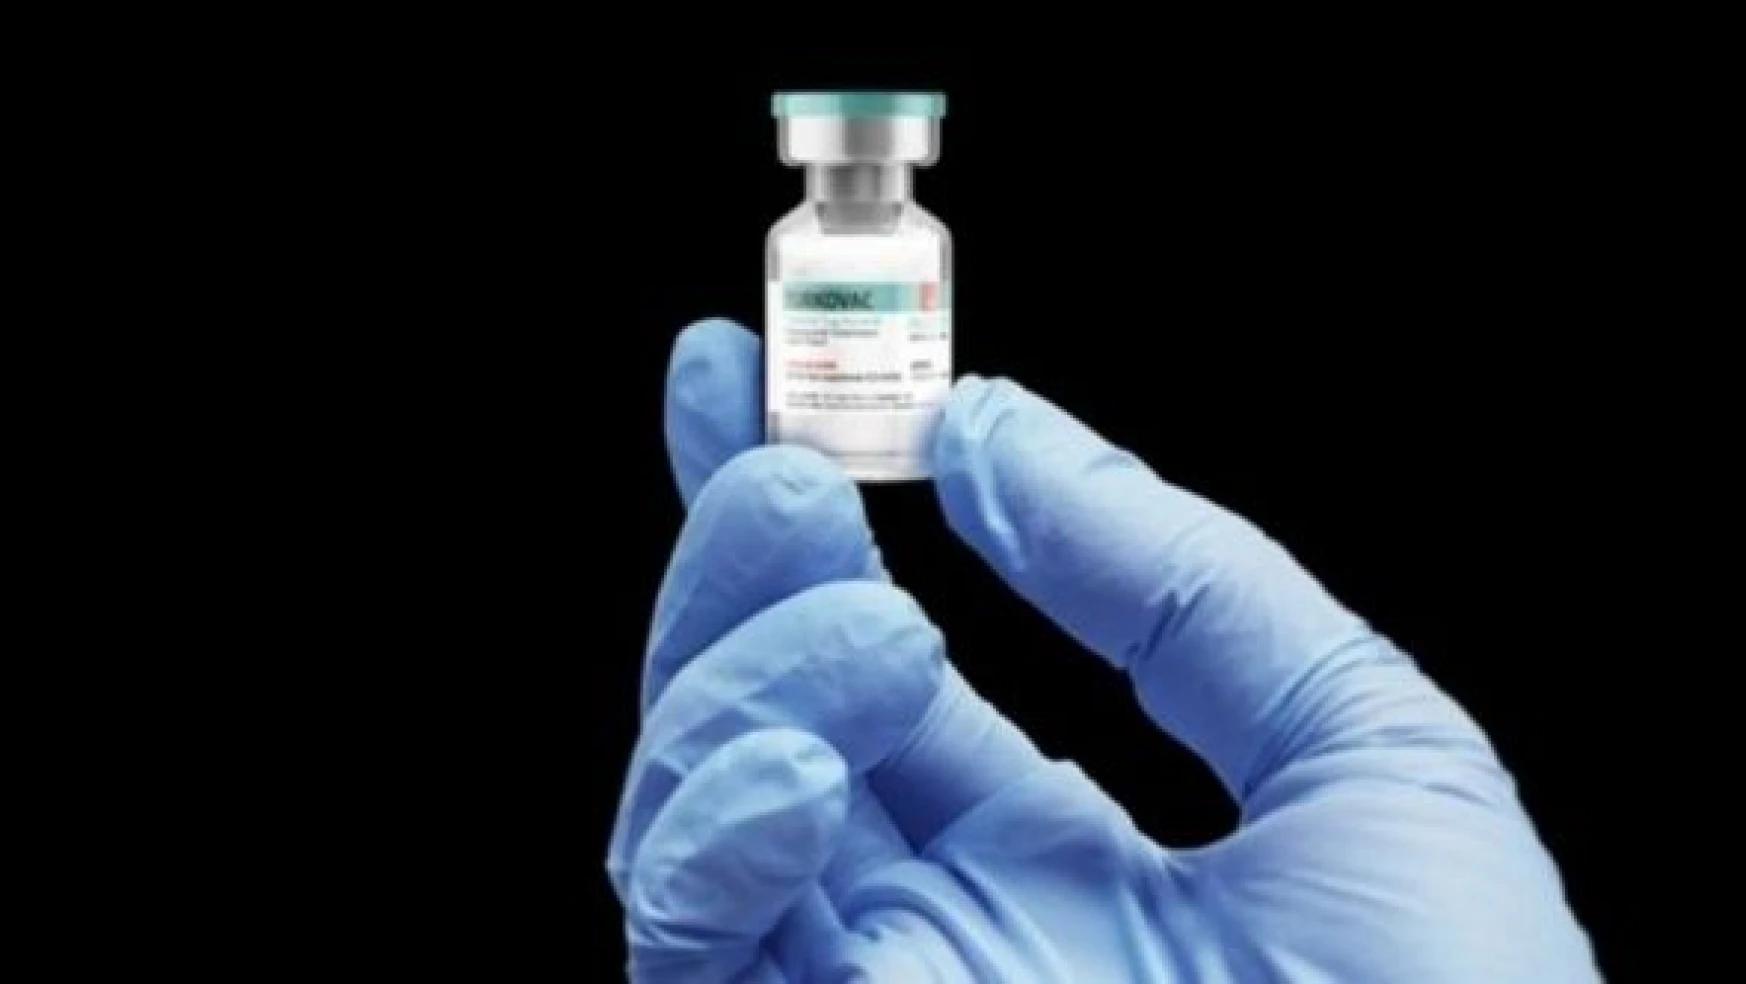 KKTC'ye girişte kabul edilen aşılara TURKOVAC eklendi